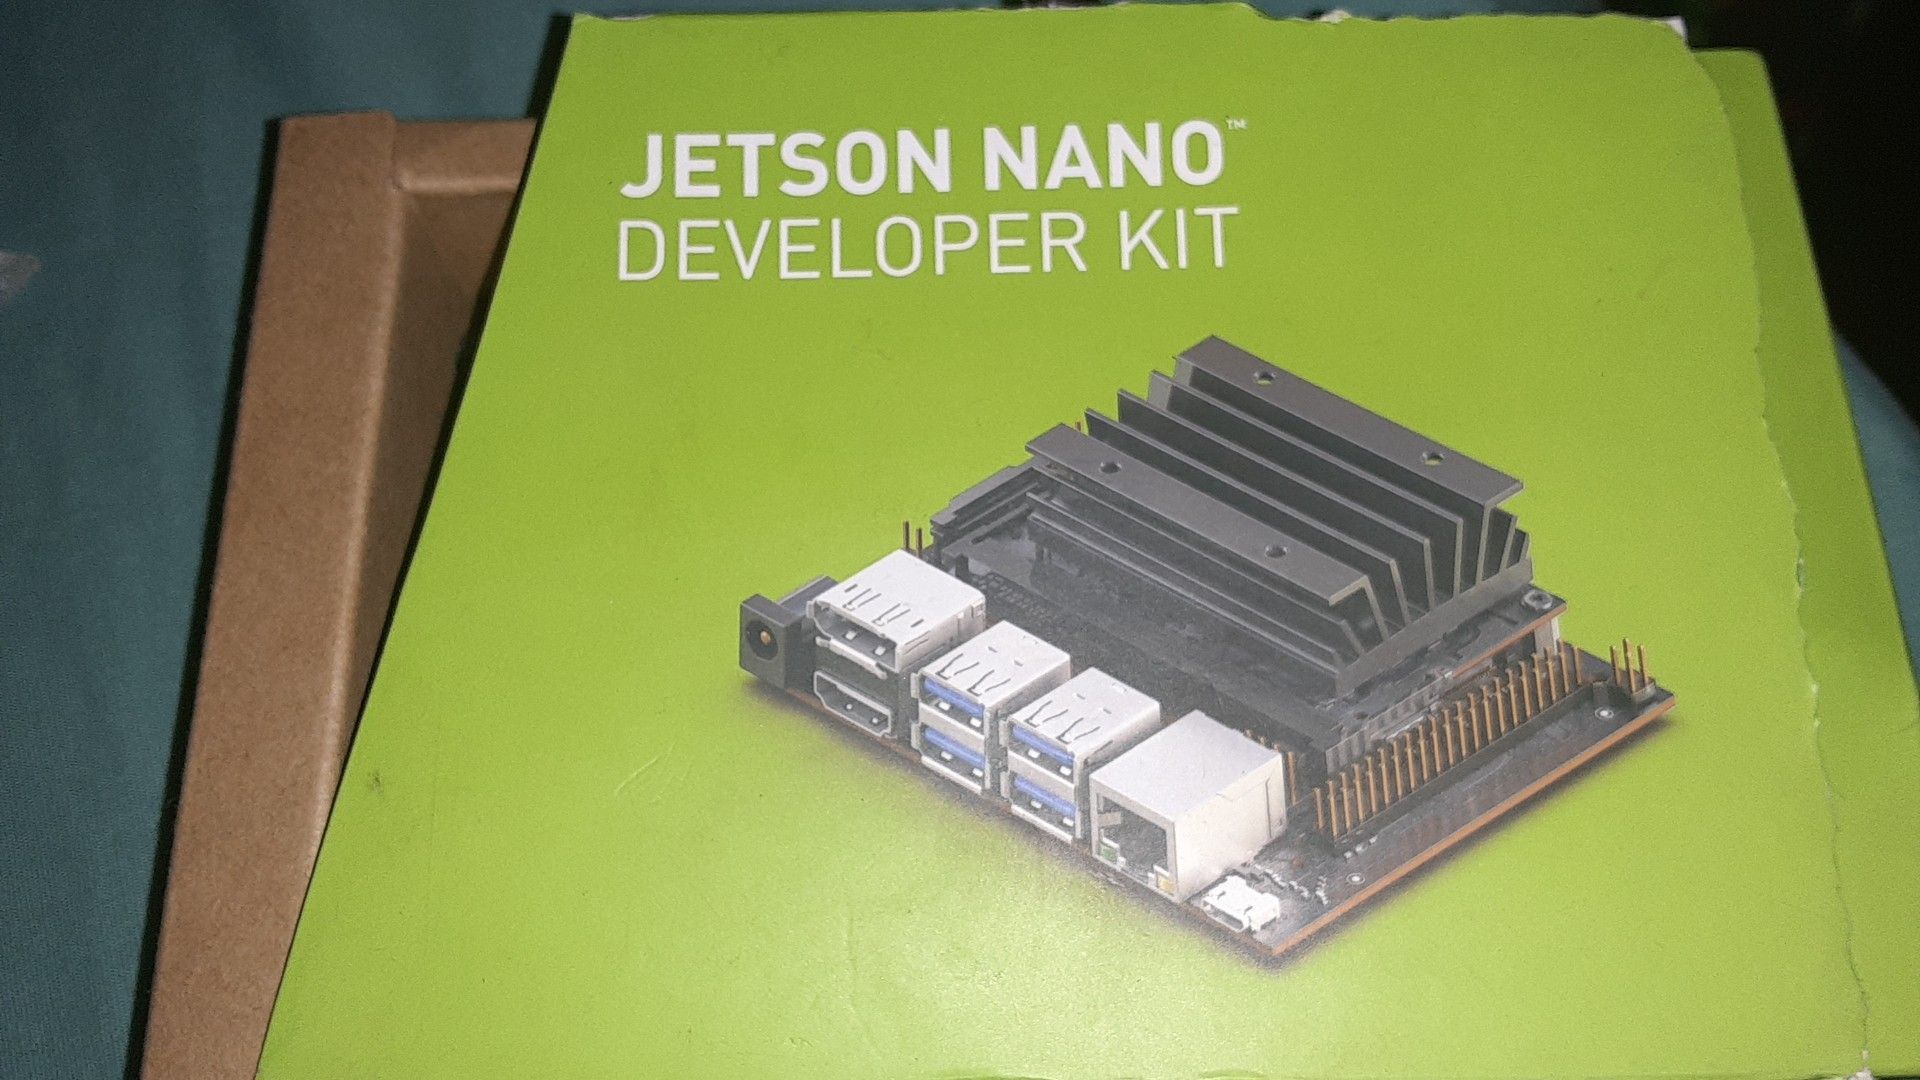 Jetson Nano Developer Kit.